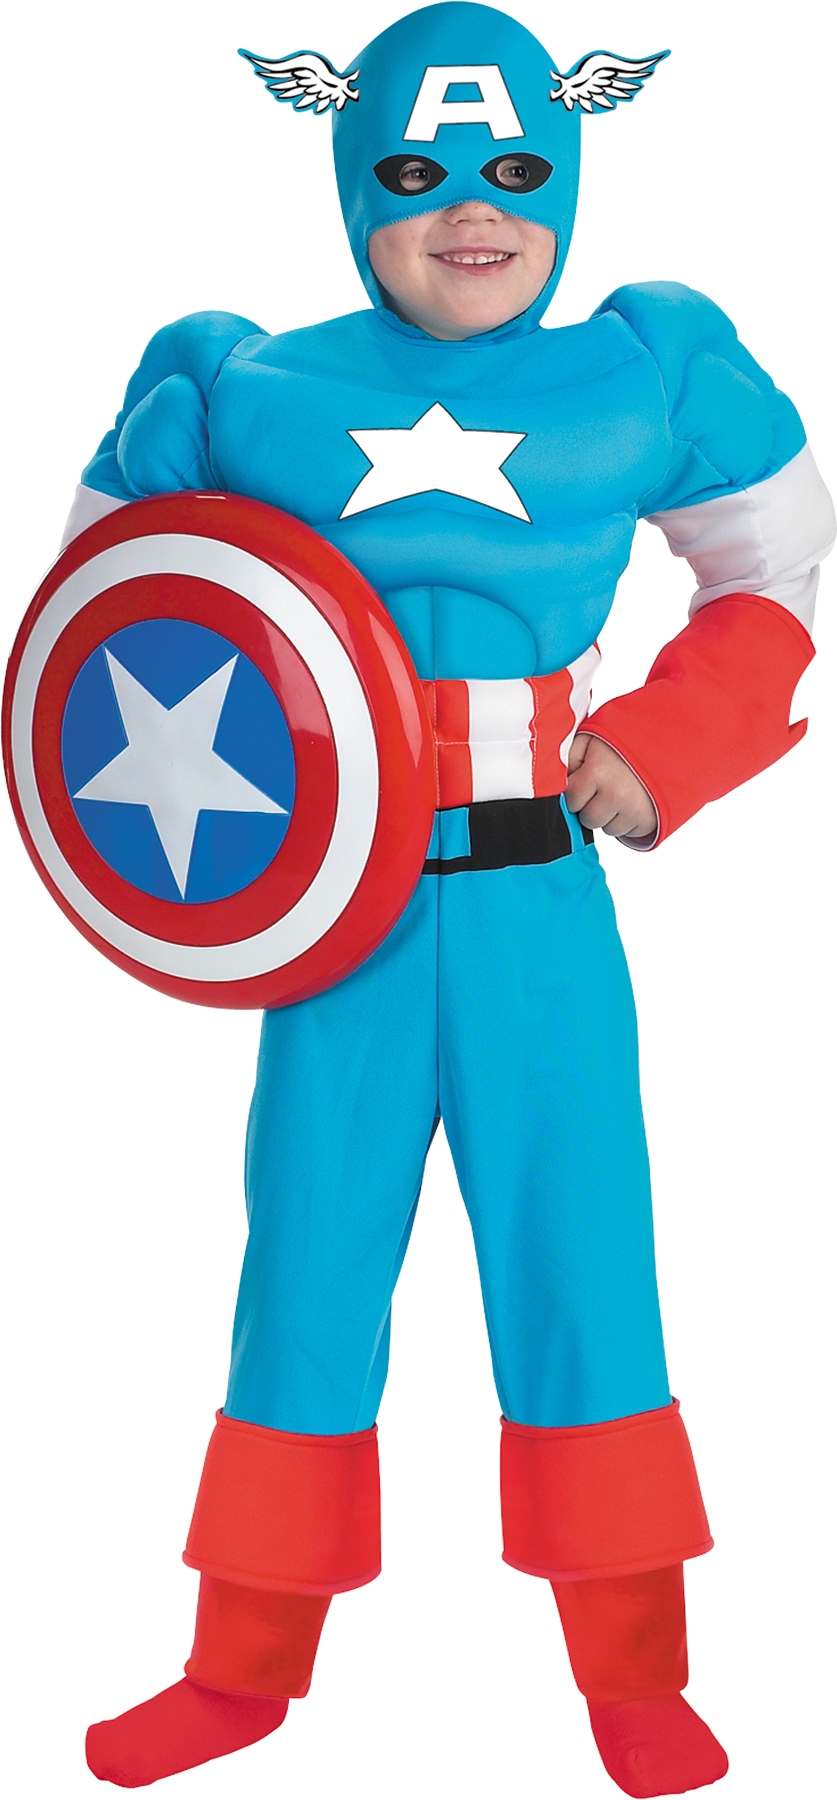 Другие костюмы Капитана Америки и других персонажей комиксов Marvel можно н...